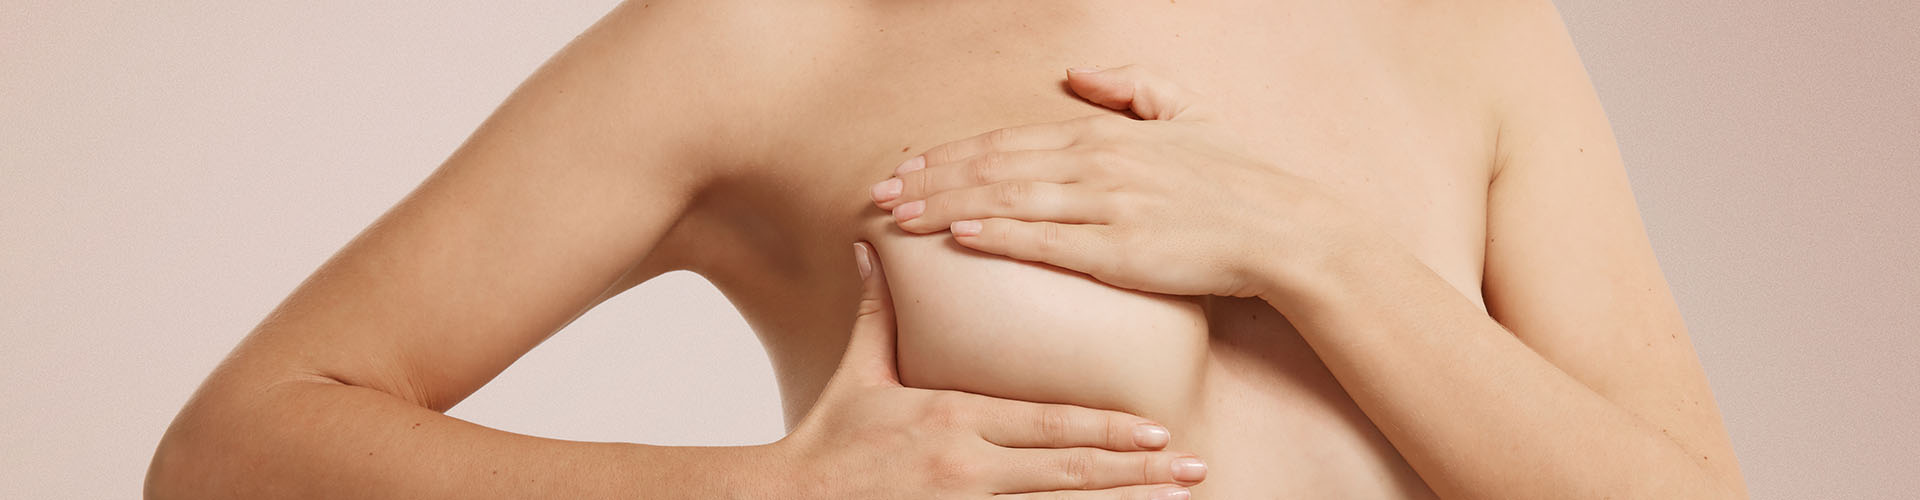 Elevación de mamas o mastopexia